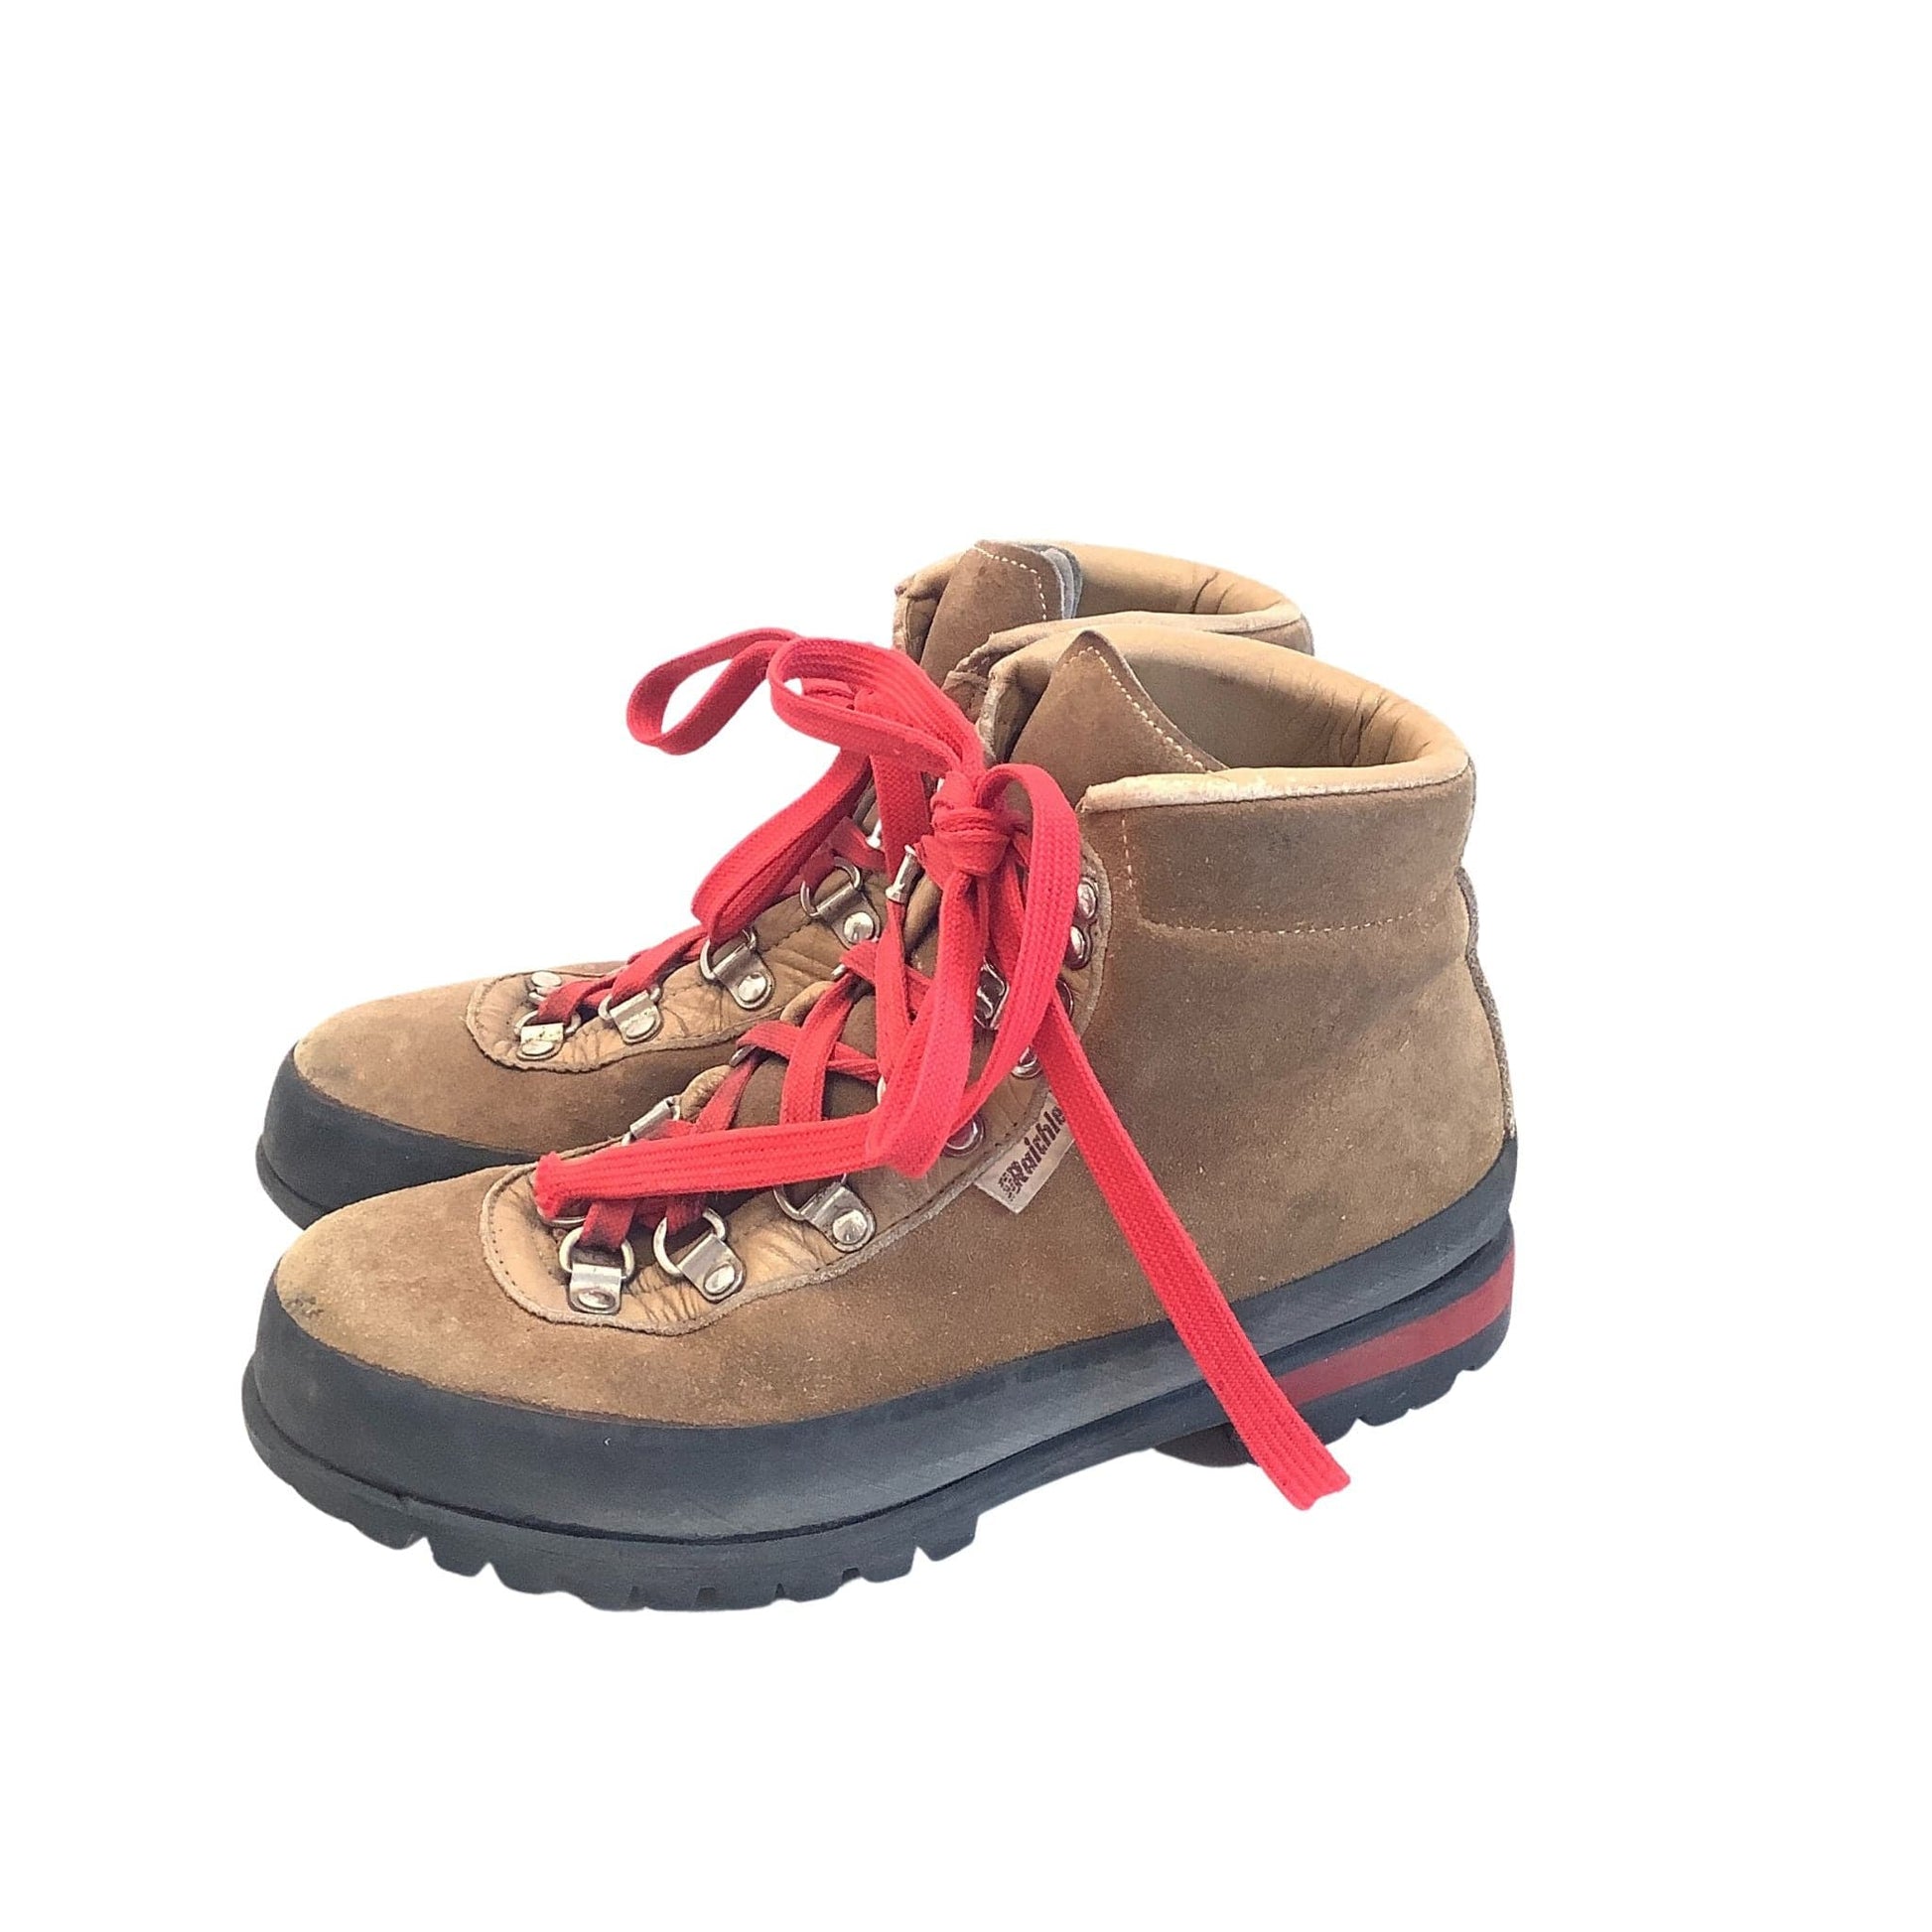 Vintage Raichle Hiking Boots 7 / Multi